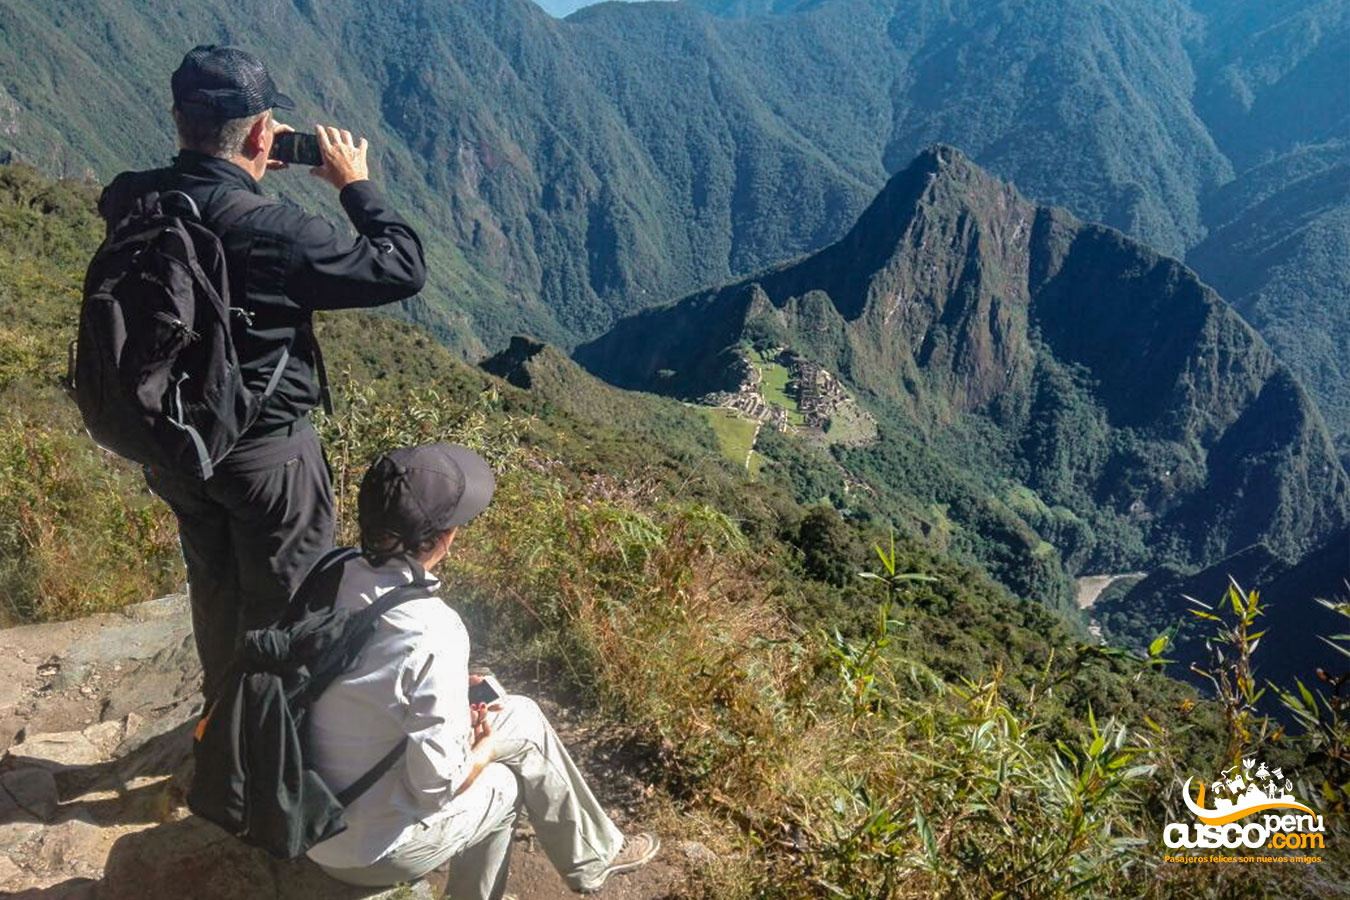 View from the summit of Machu Picchu Mountain. Source: CuscoPeru.com